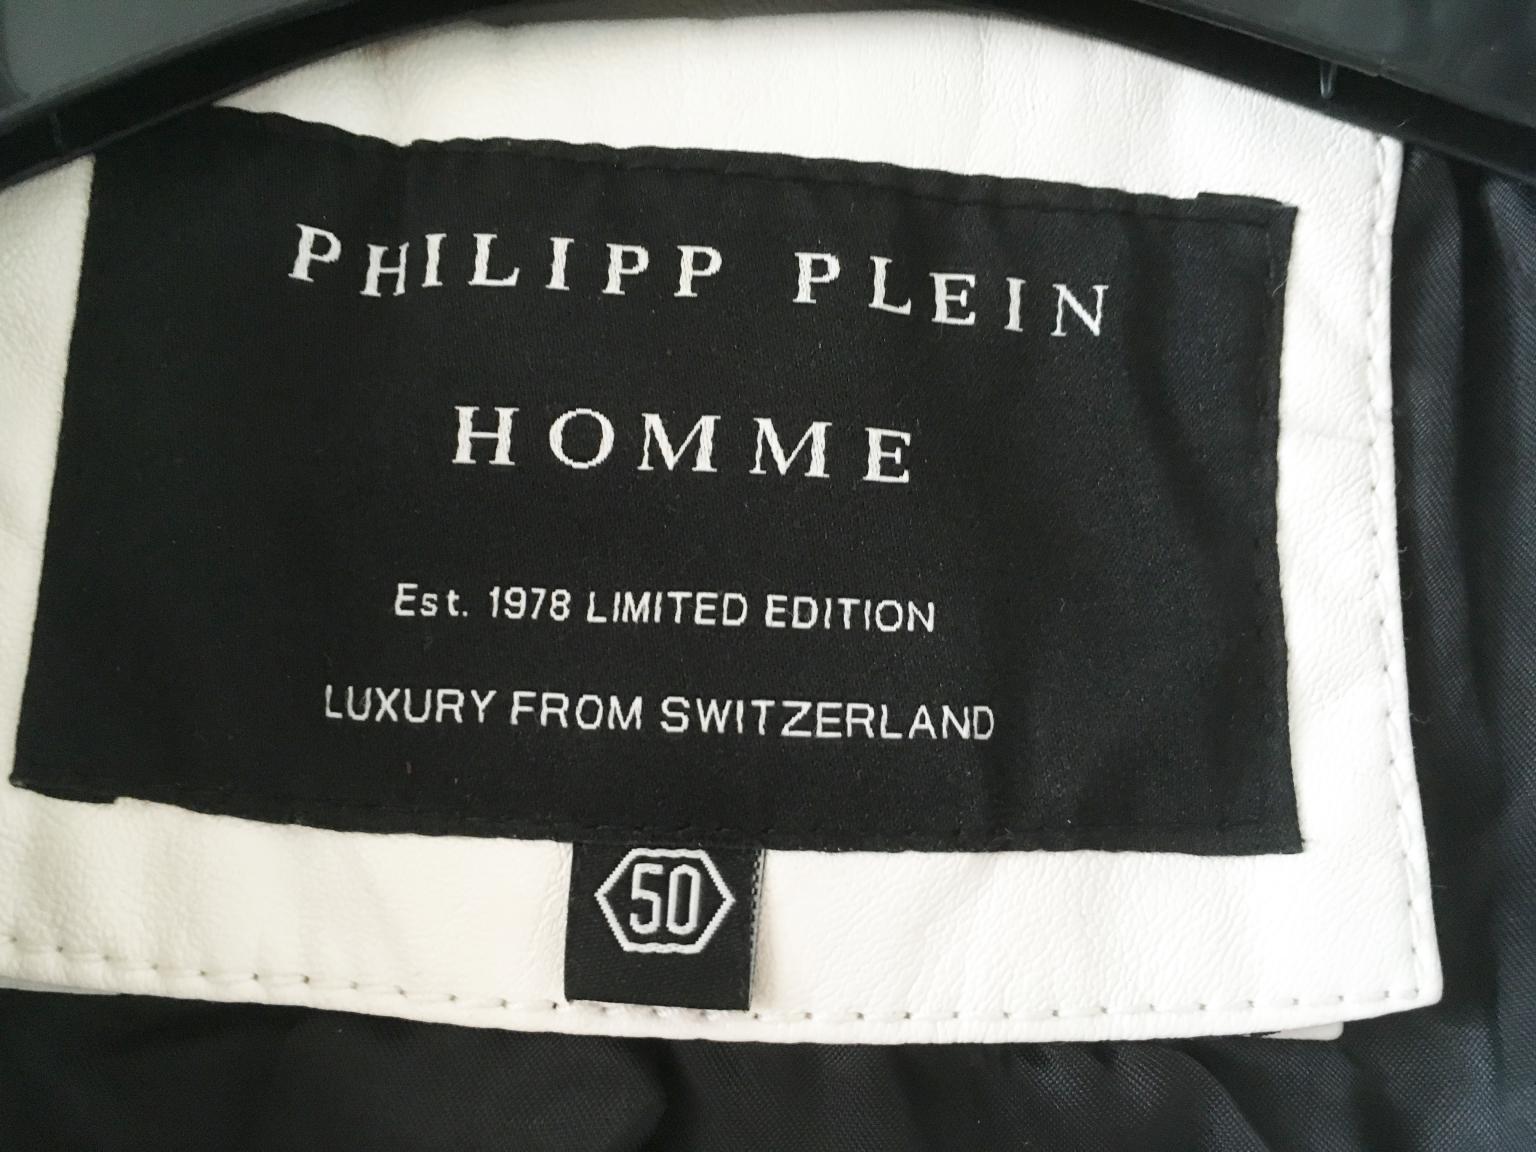 philipp plein homme est 1978 limited edition luxury from switzerland